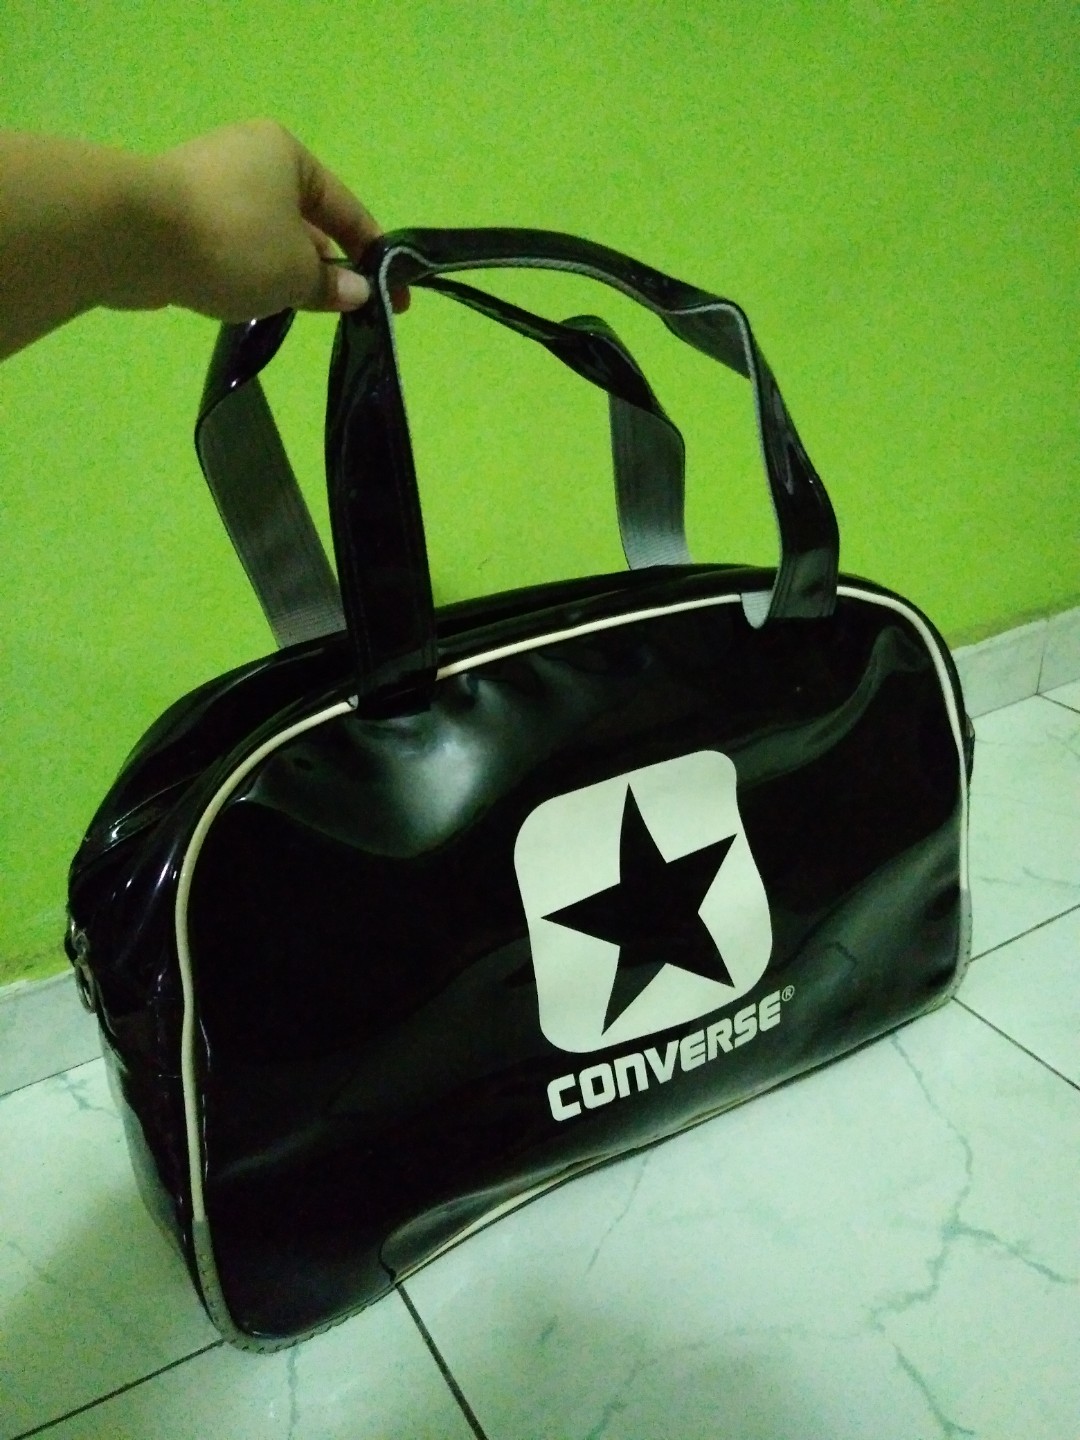 converse handbag